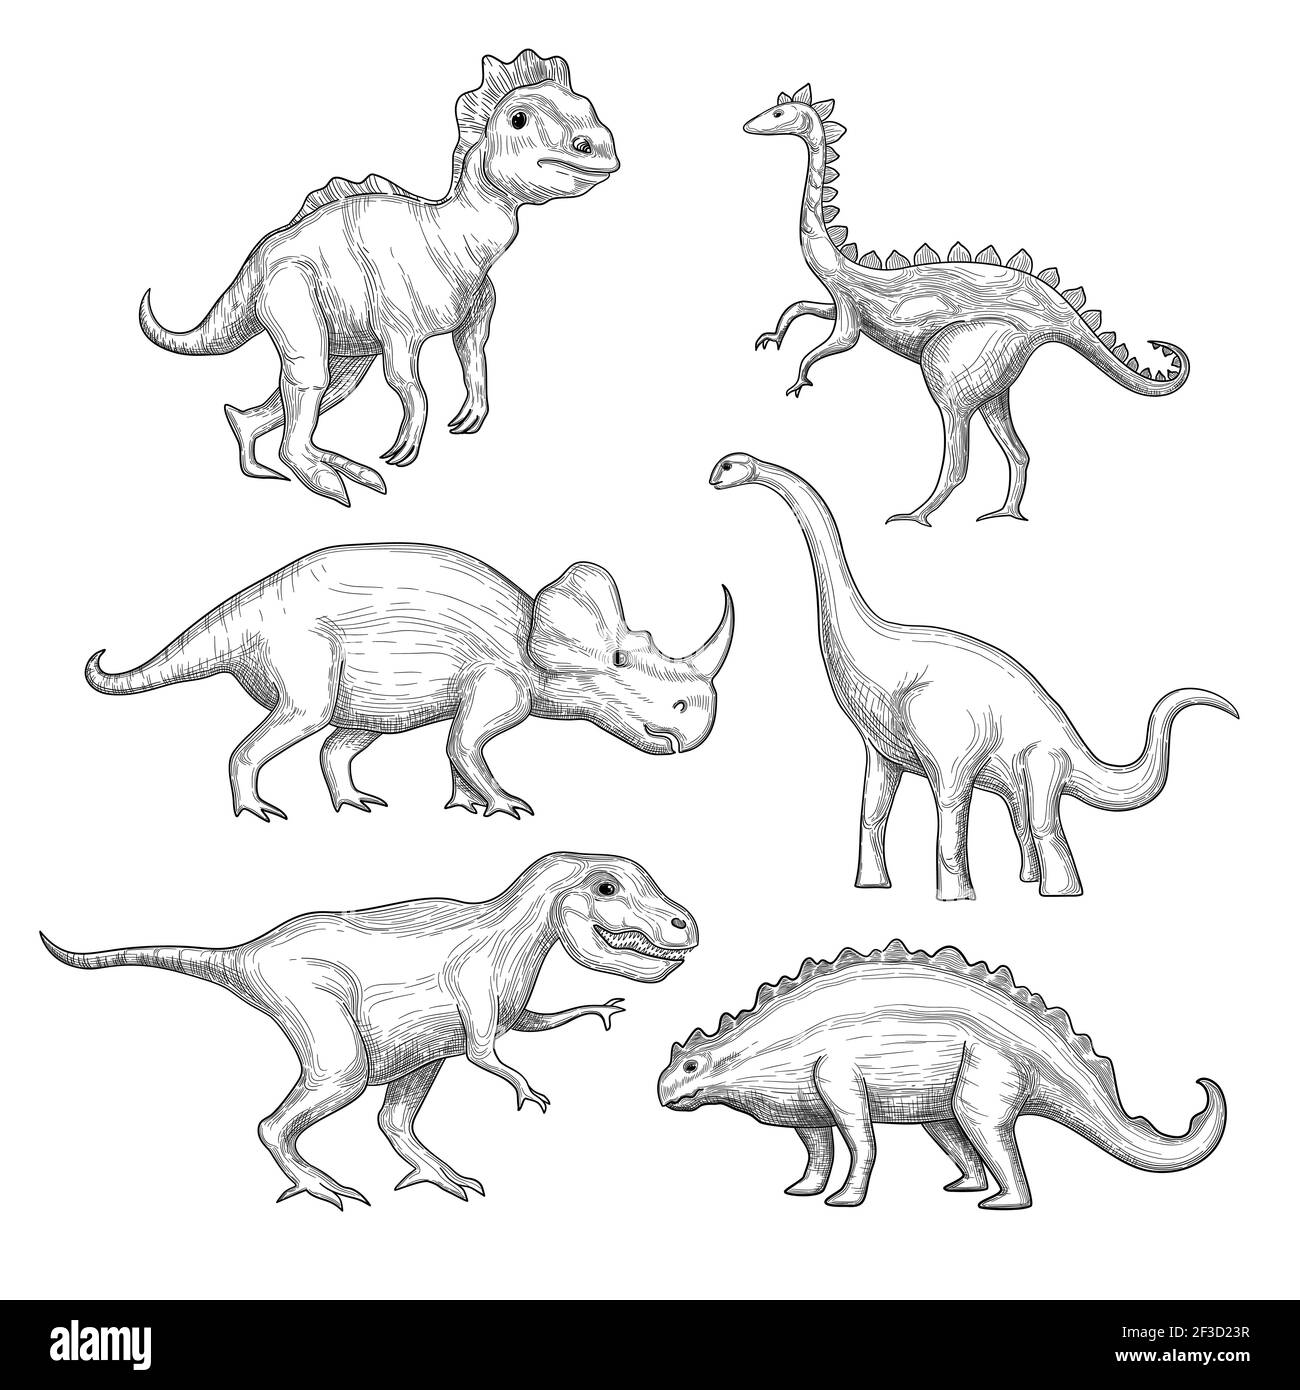 Dinosaurier. Paläontologie Ausstellung Sammlung pflanzenfressende Aussterben Dinosaurier in Aktion stellt Hand gezeichnet Vektor Stock Vektor